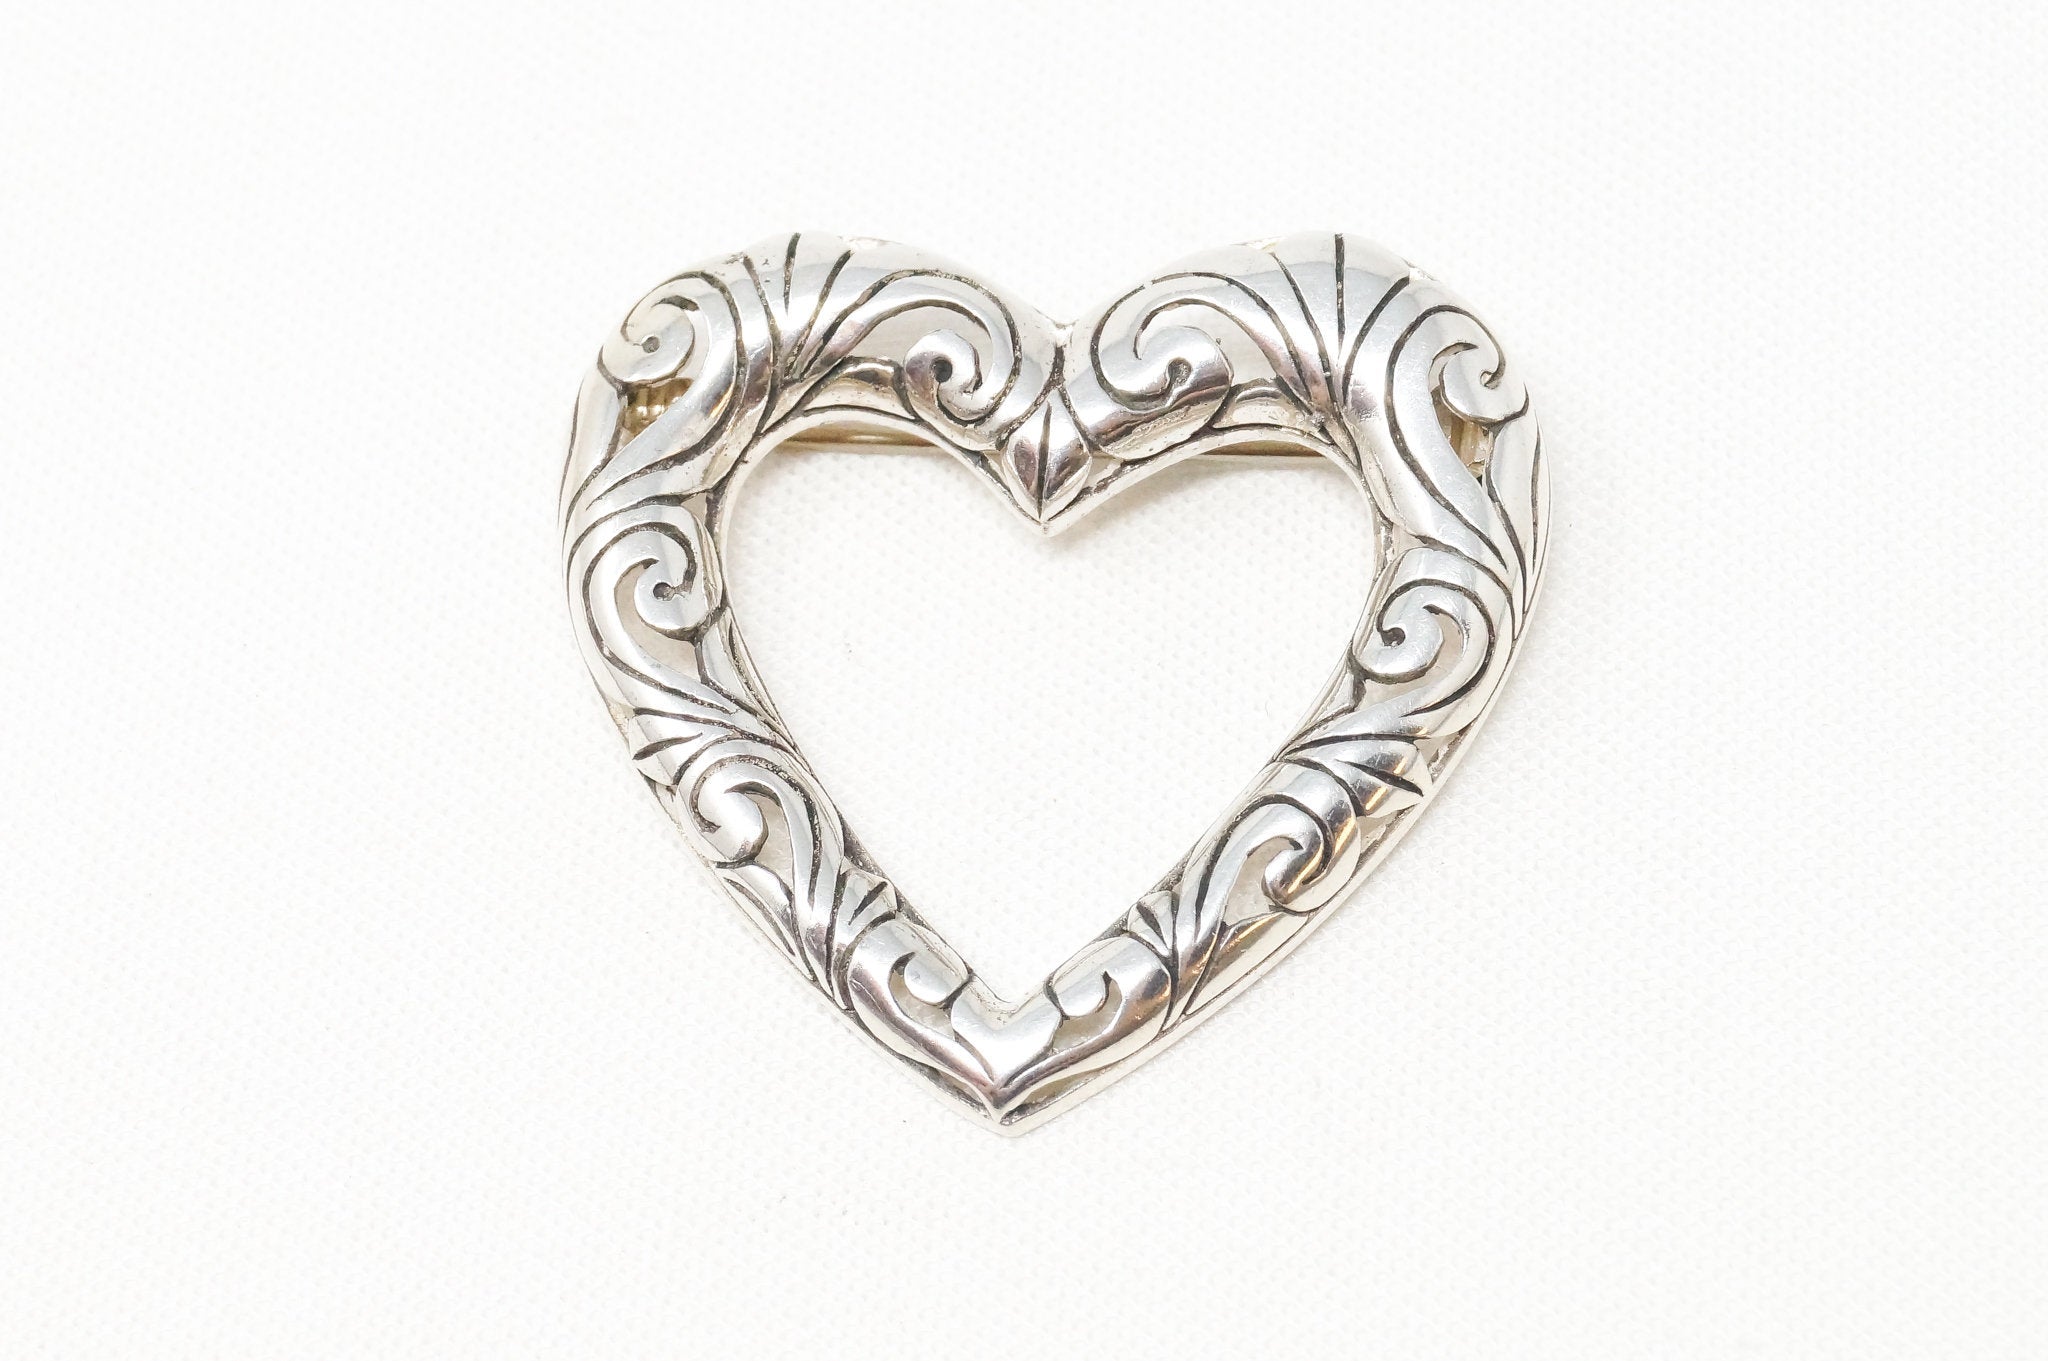 Vintage Open Heart Art Deco Swirl Sterling Silver Brooch Pin